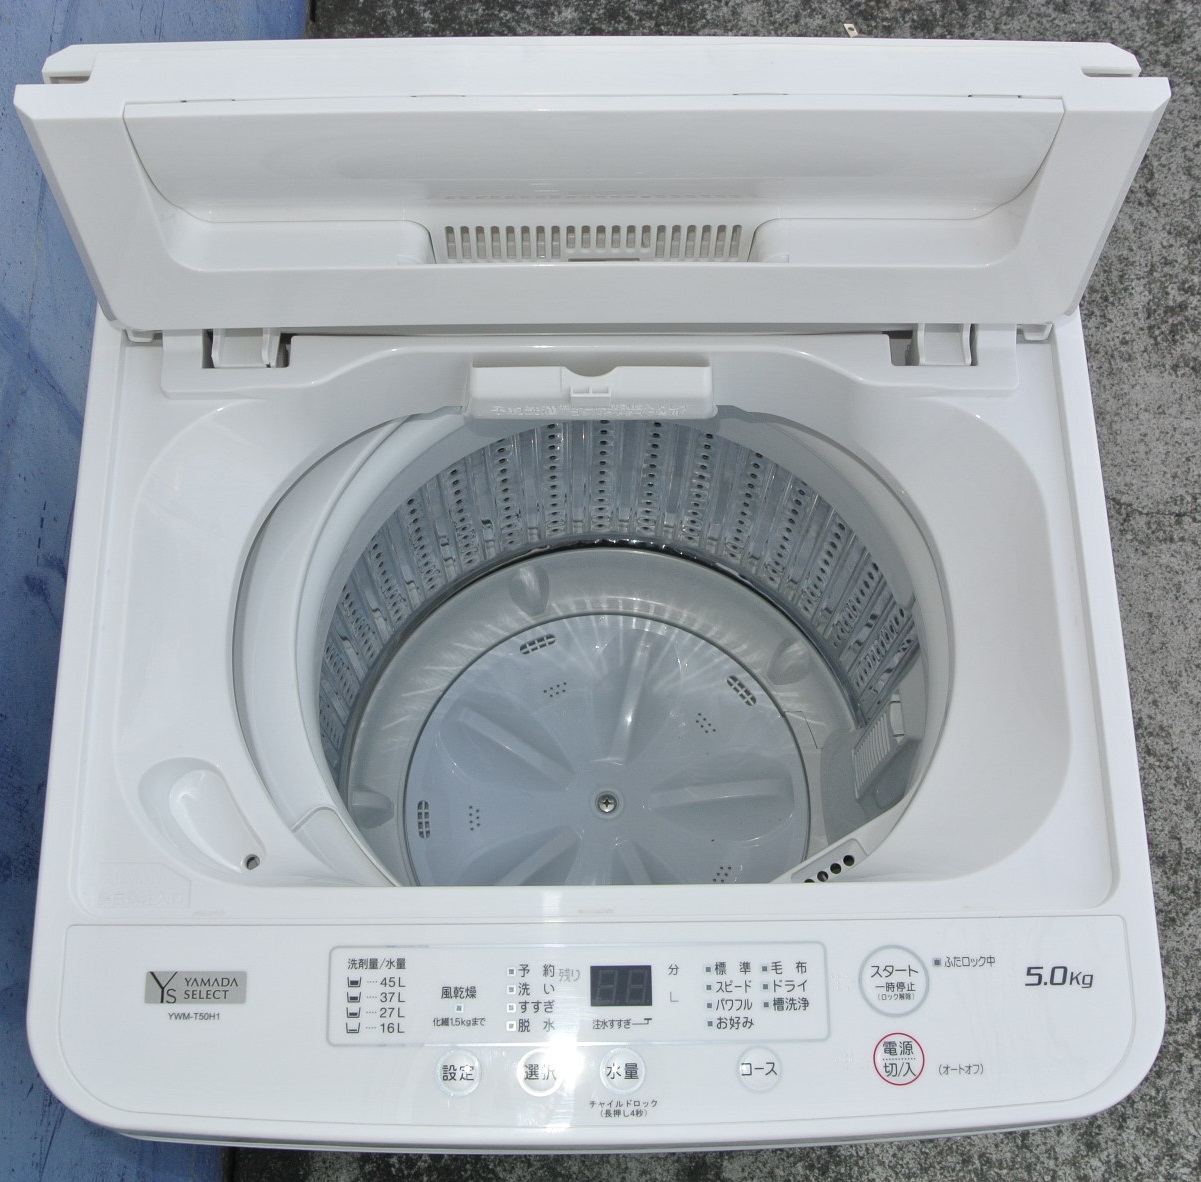 ヤマダセレクト白い洗濯機YWM-T50H1■2020年製造